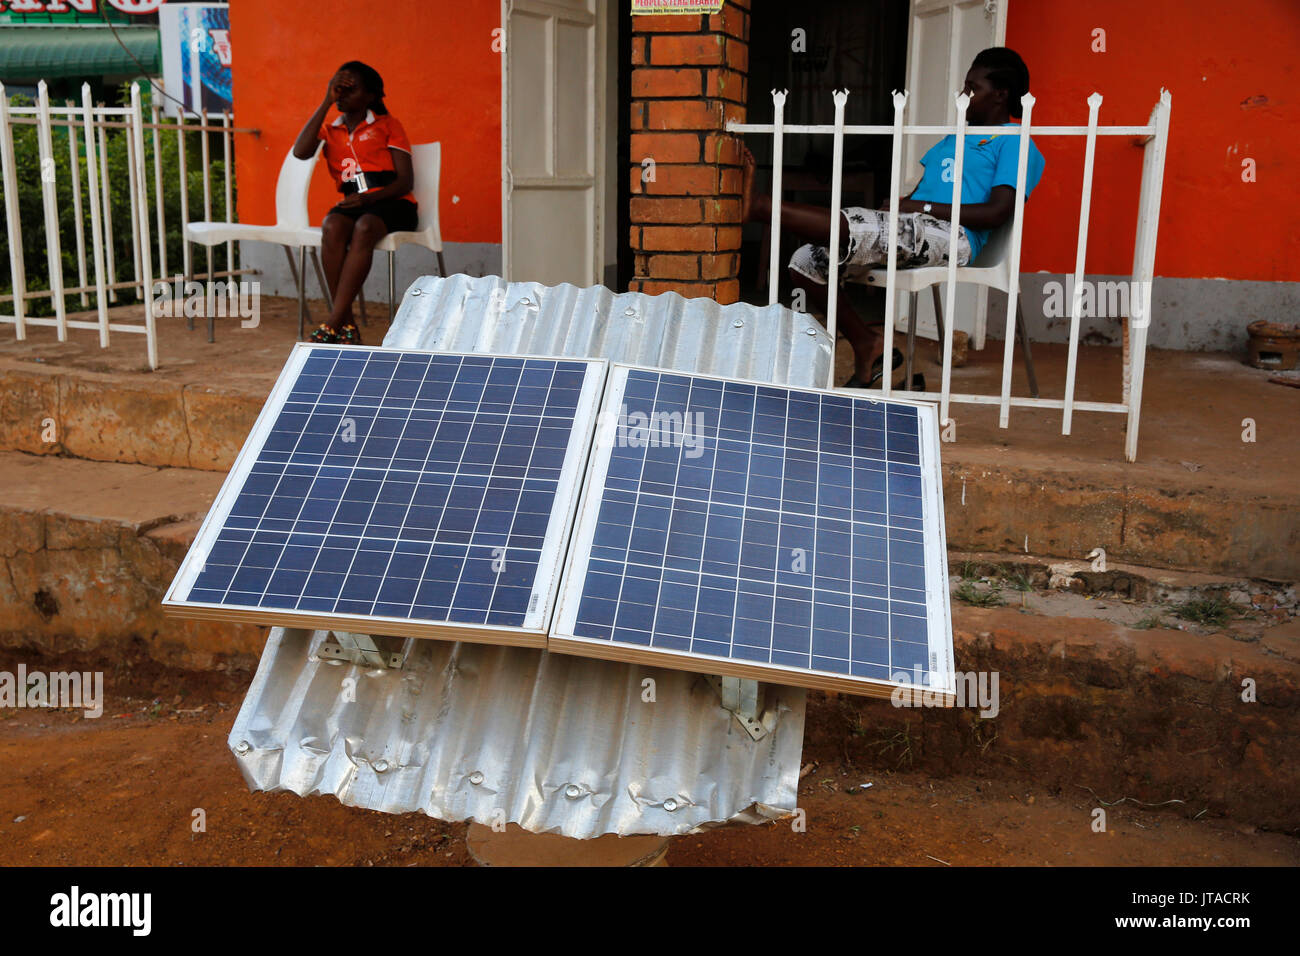 Solar panel shop, Masindi, Uganda, Africa Stock Photo